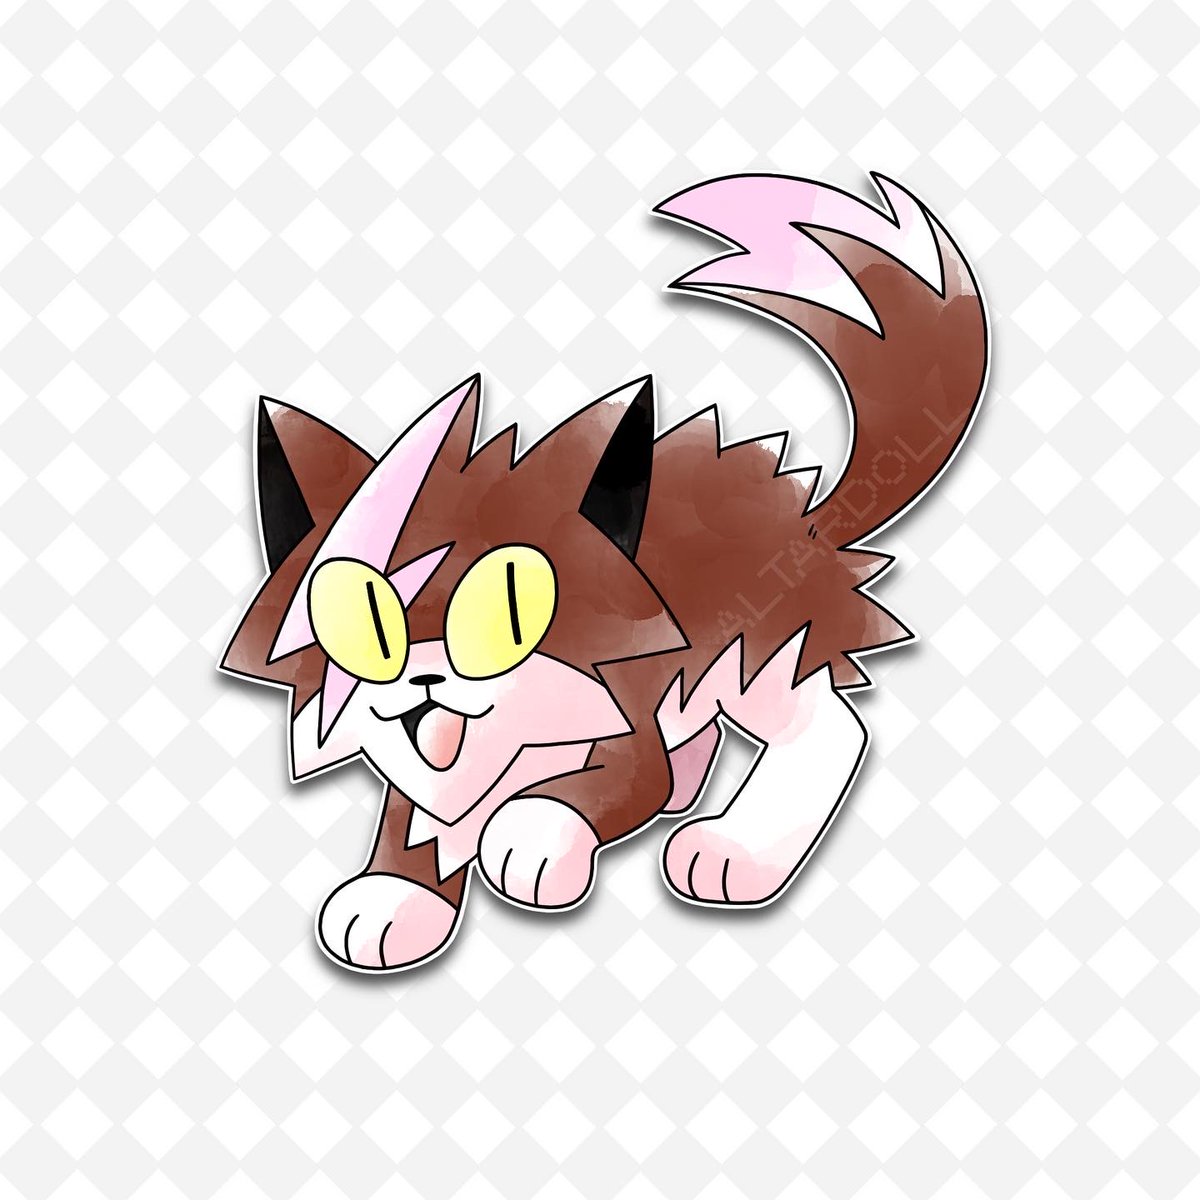 [comm] turned my friend’s cat Bowie into an early gen Pokémon!

#fakemon #pokemon #kensugimori